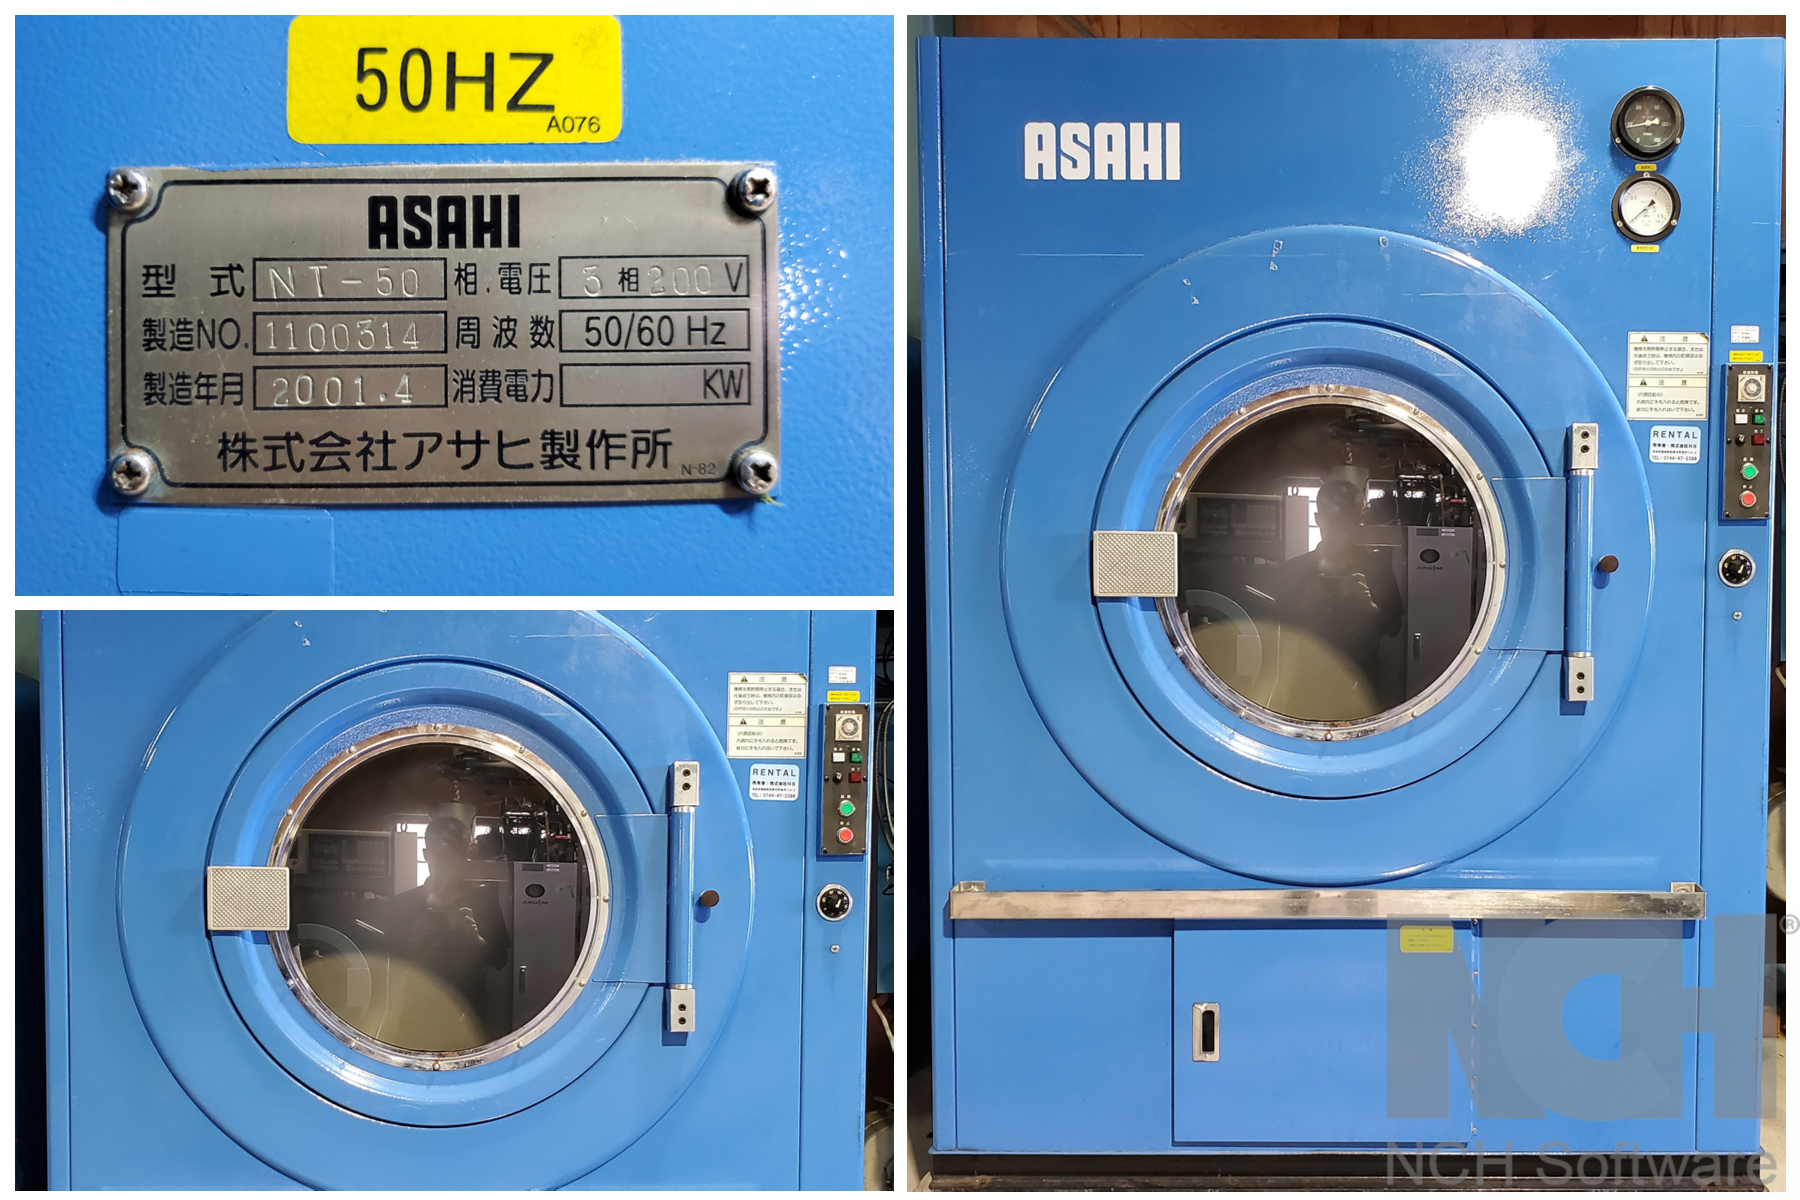 乾燥機 - カテゴリー別中古機械情報 | NB-washing machine RENTAL & SALE